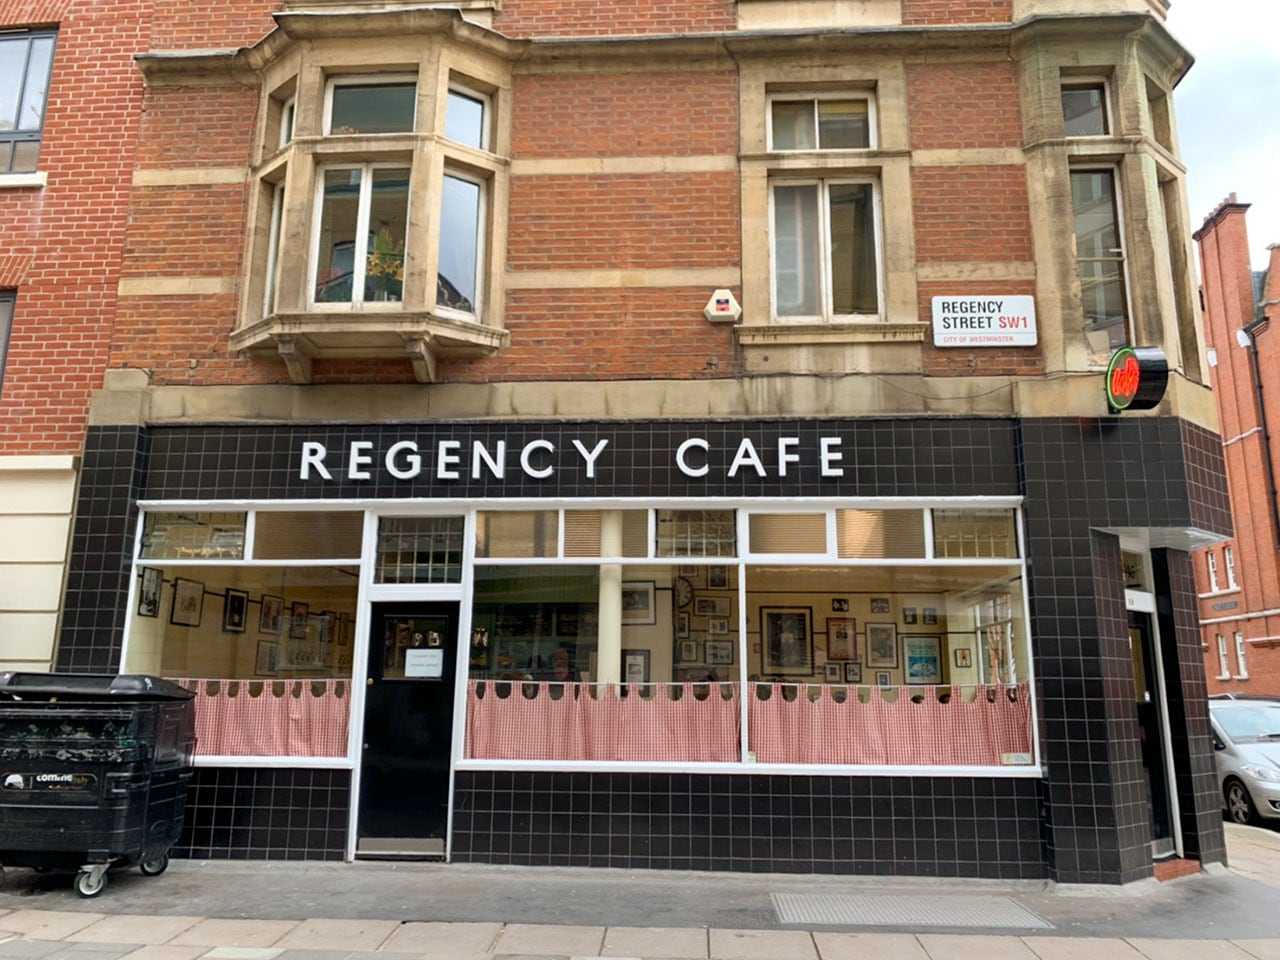 The Regency Café